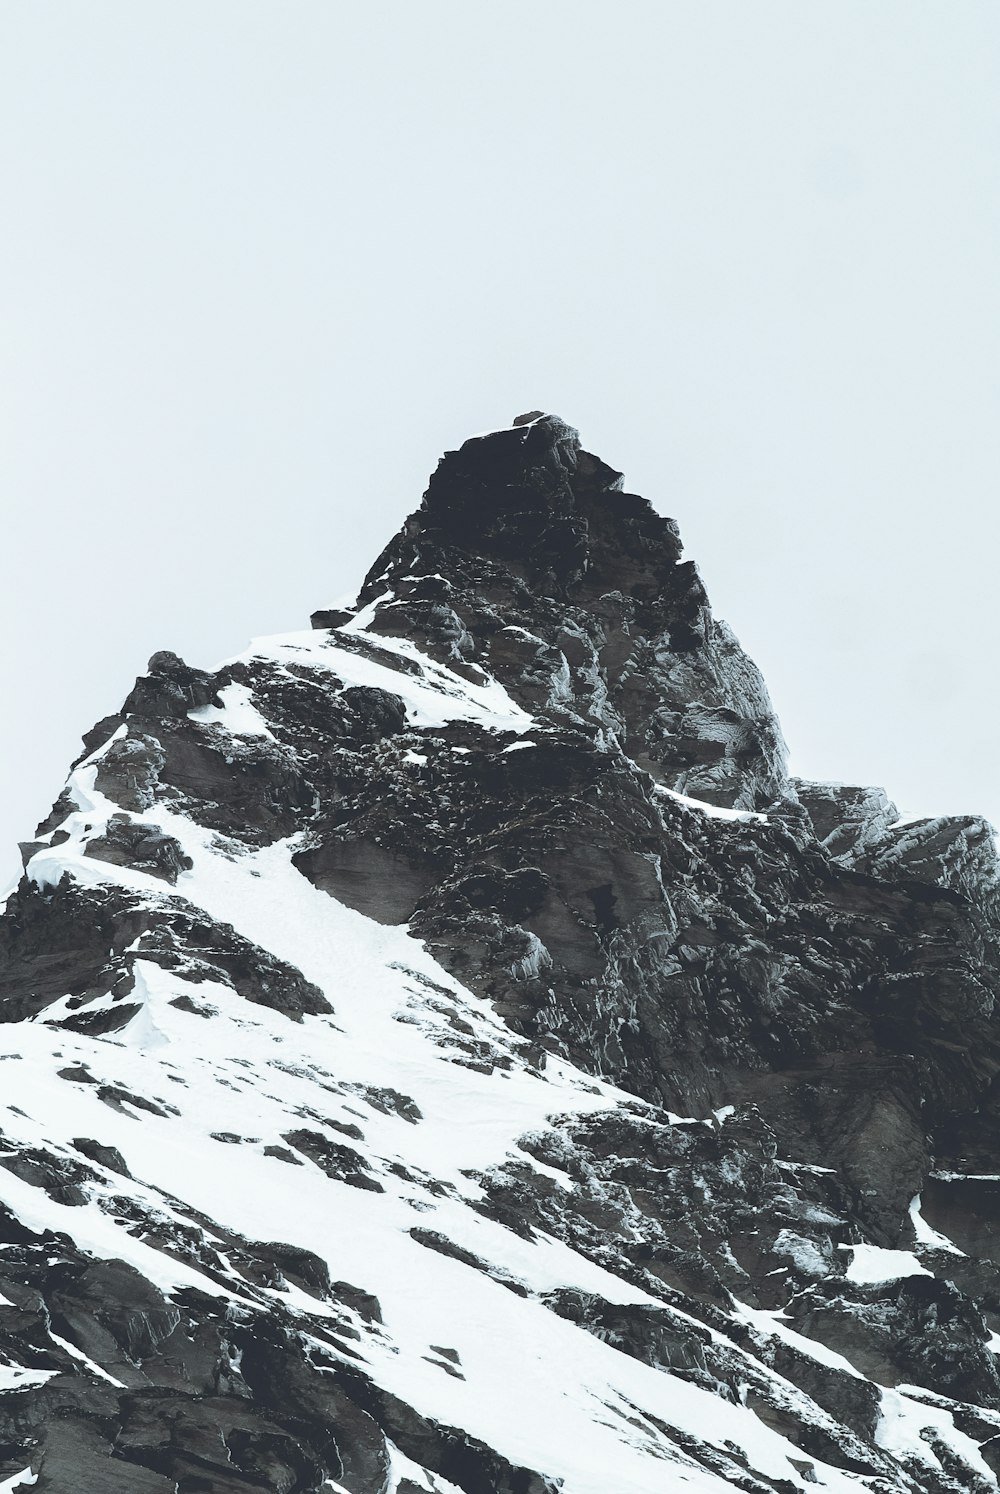 foto in scala di grigi di una montagna